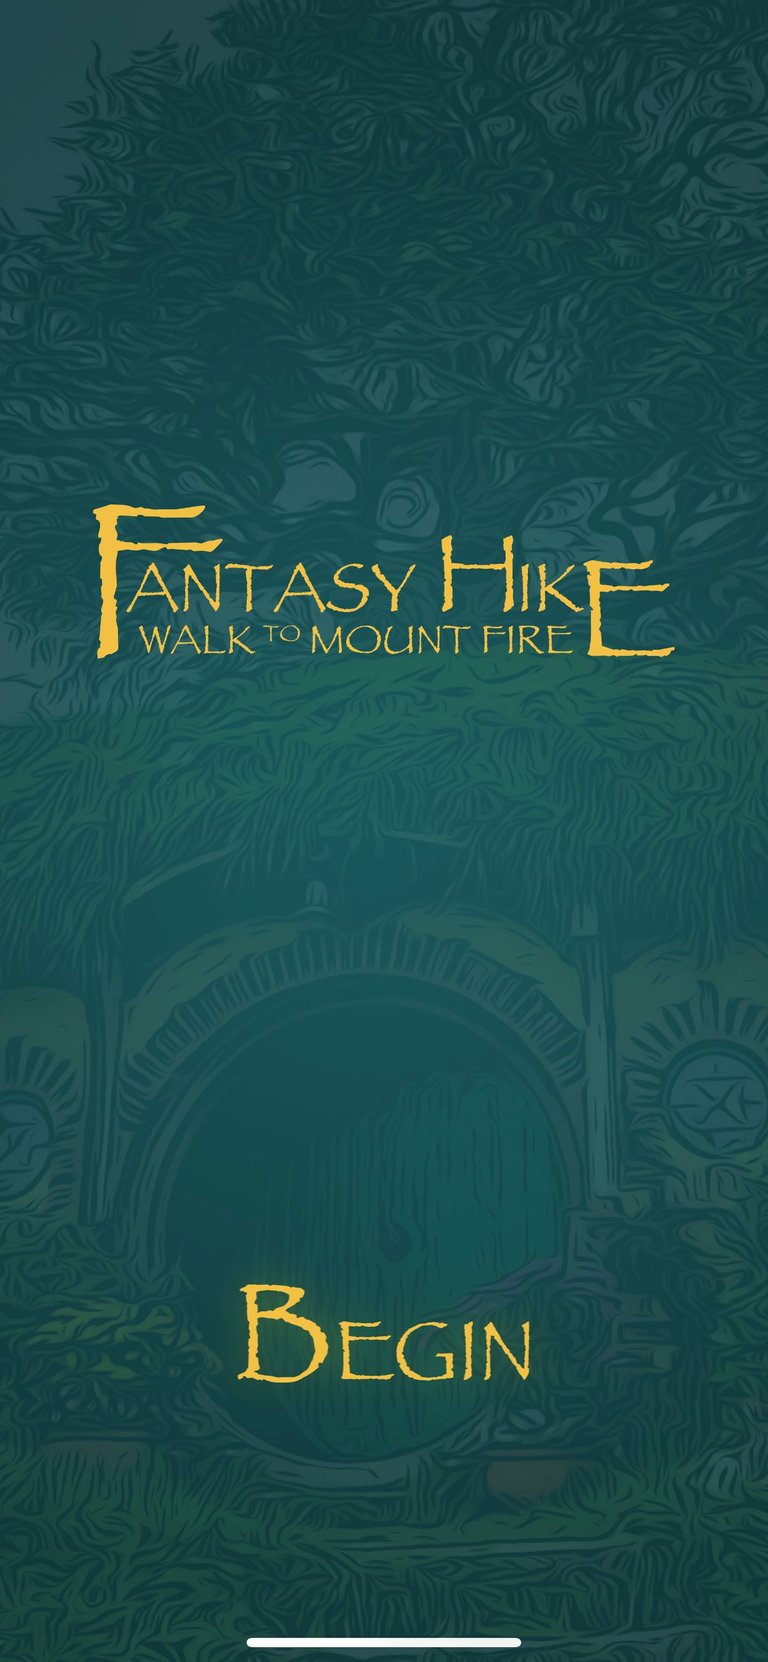 Fantasy Hike - begin screen.PNG